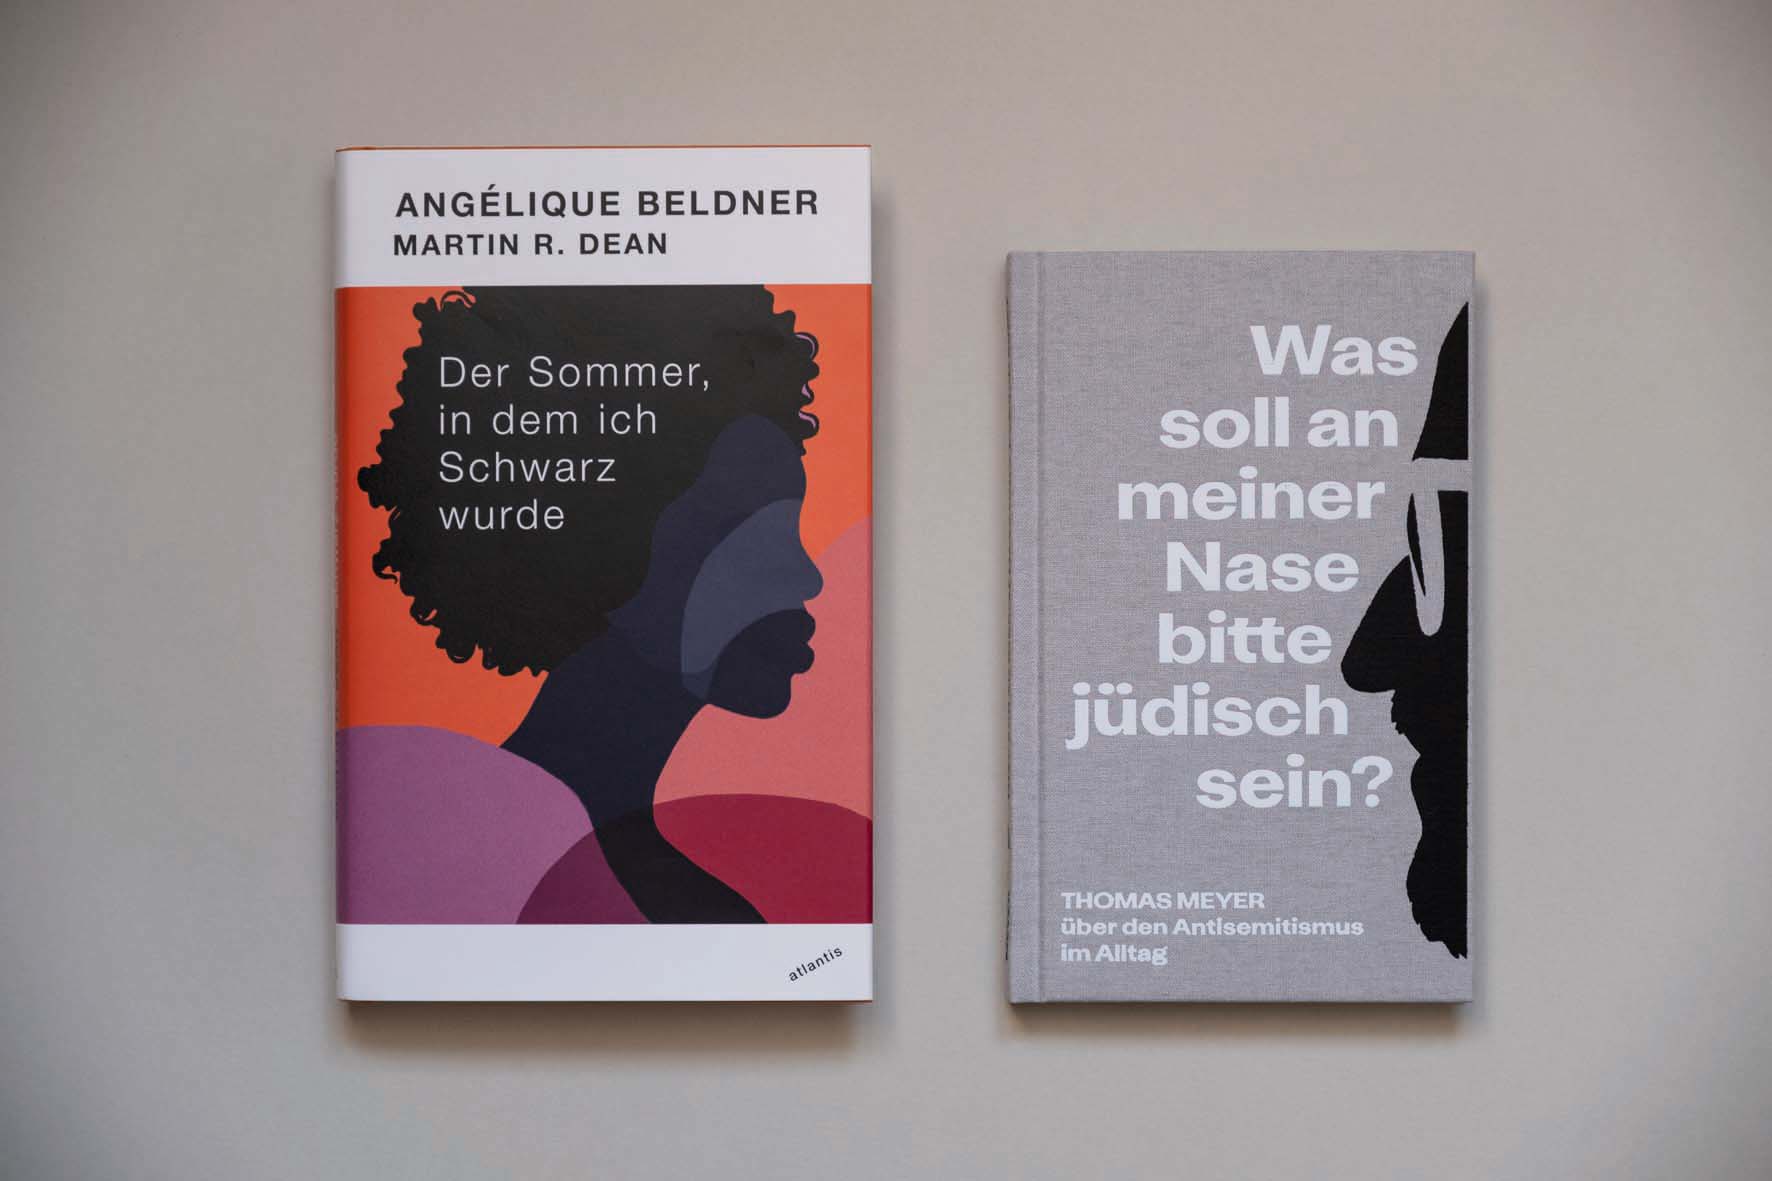 Foto der Bücher "Der Sommer, in dem ich Schwarz wurde" und "Was soll an meiner Nase bitte jüdisch sein"